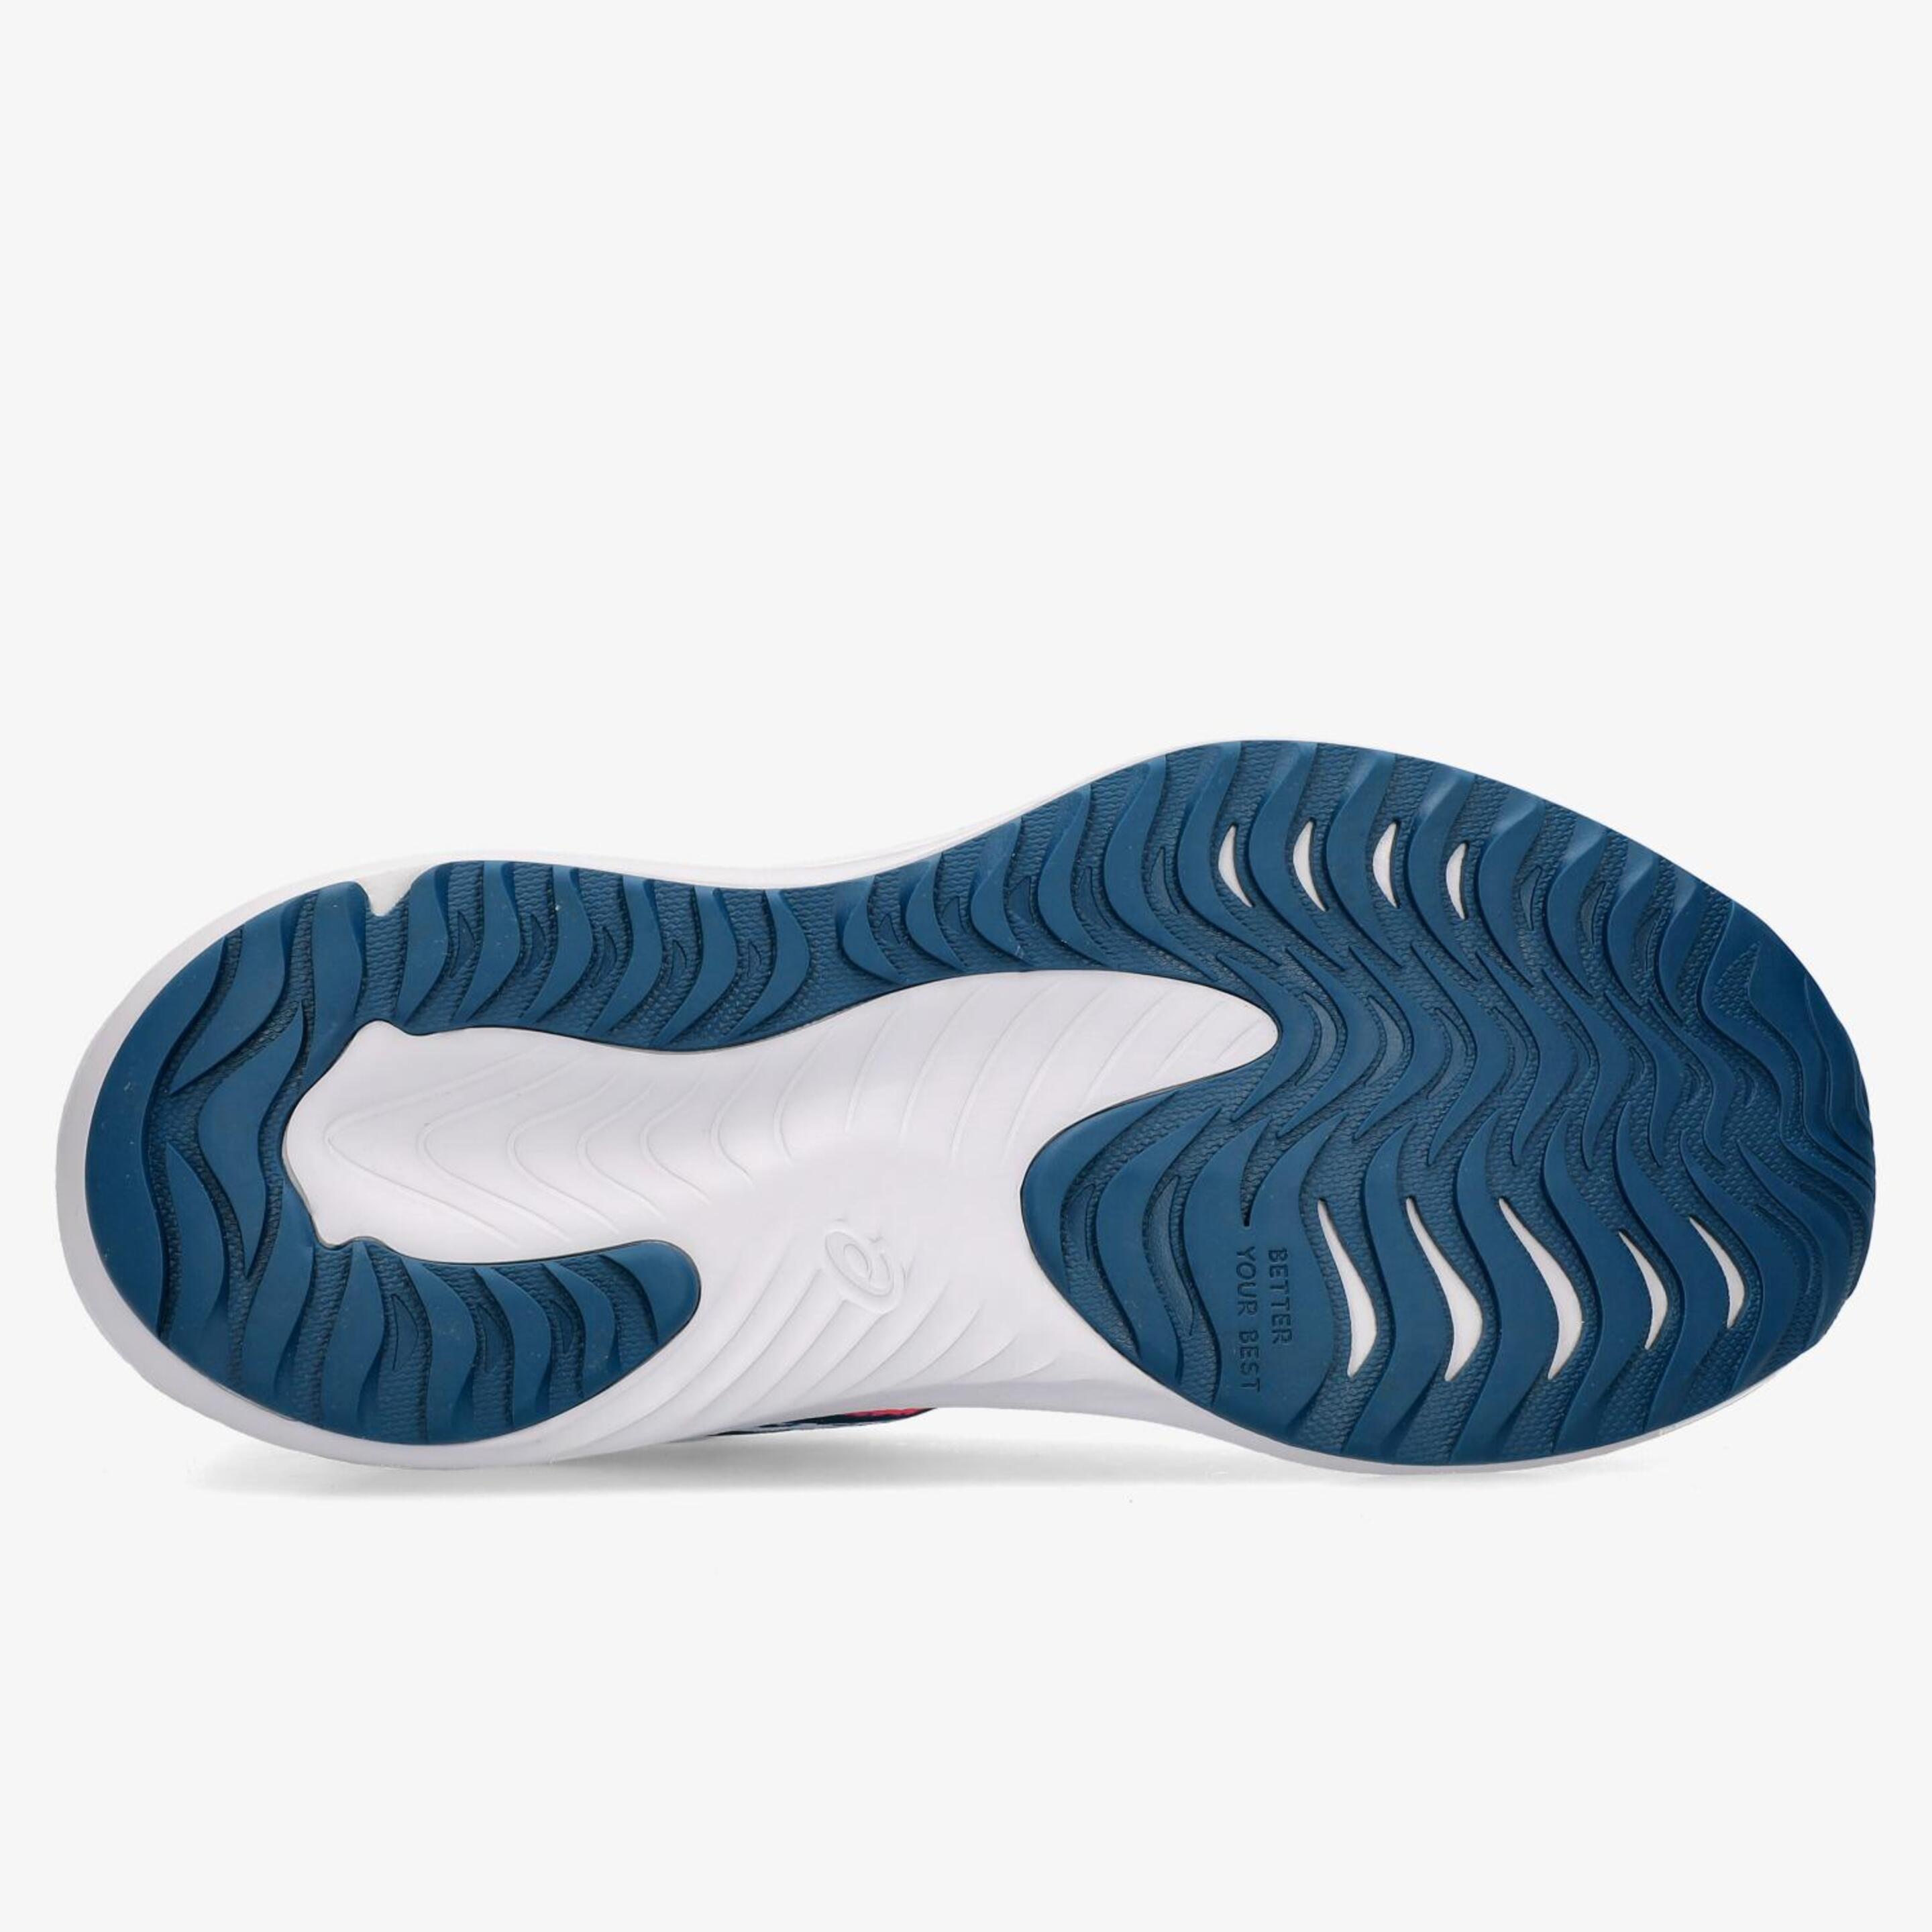 ASICS Gel Noosa Tri 15 Gs - Azul - Zapatillas Running Mujer